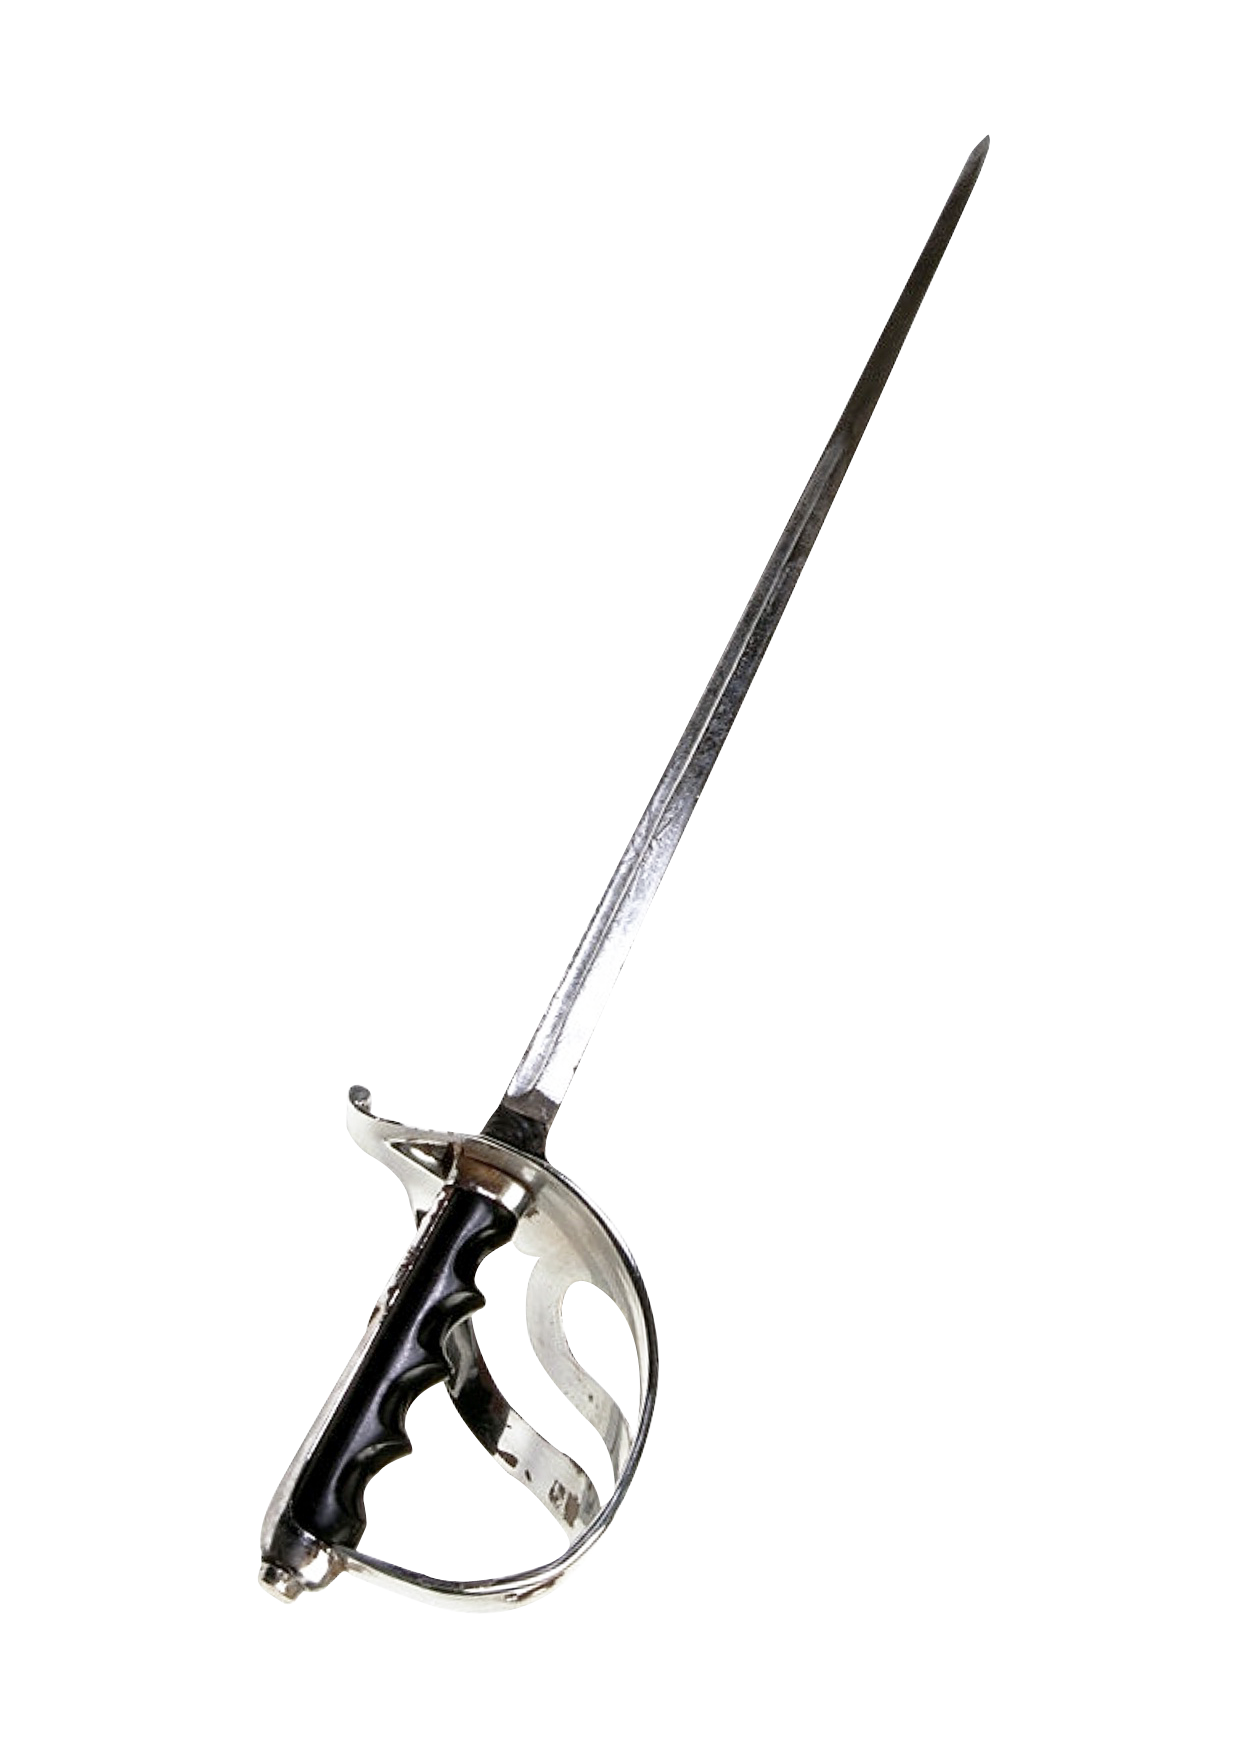 Antique Rapier Sword PNG image